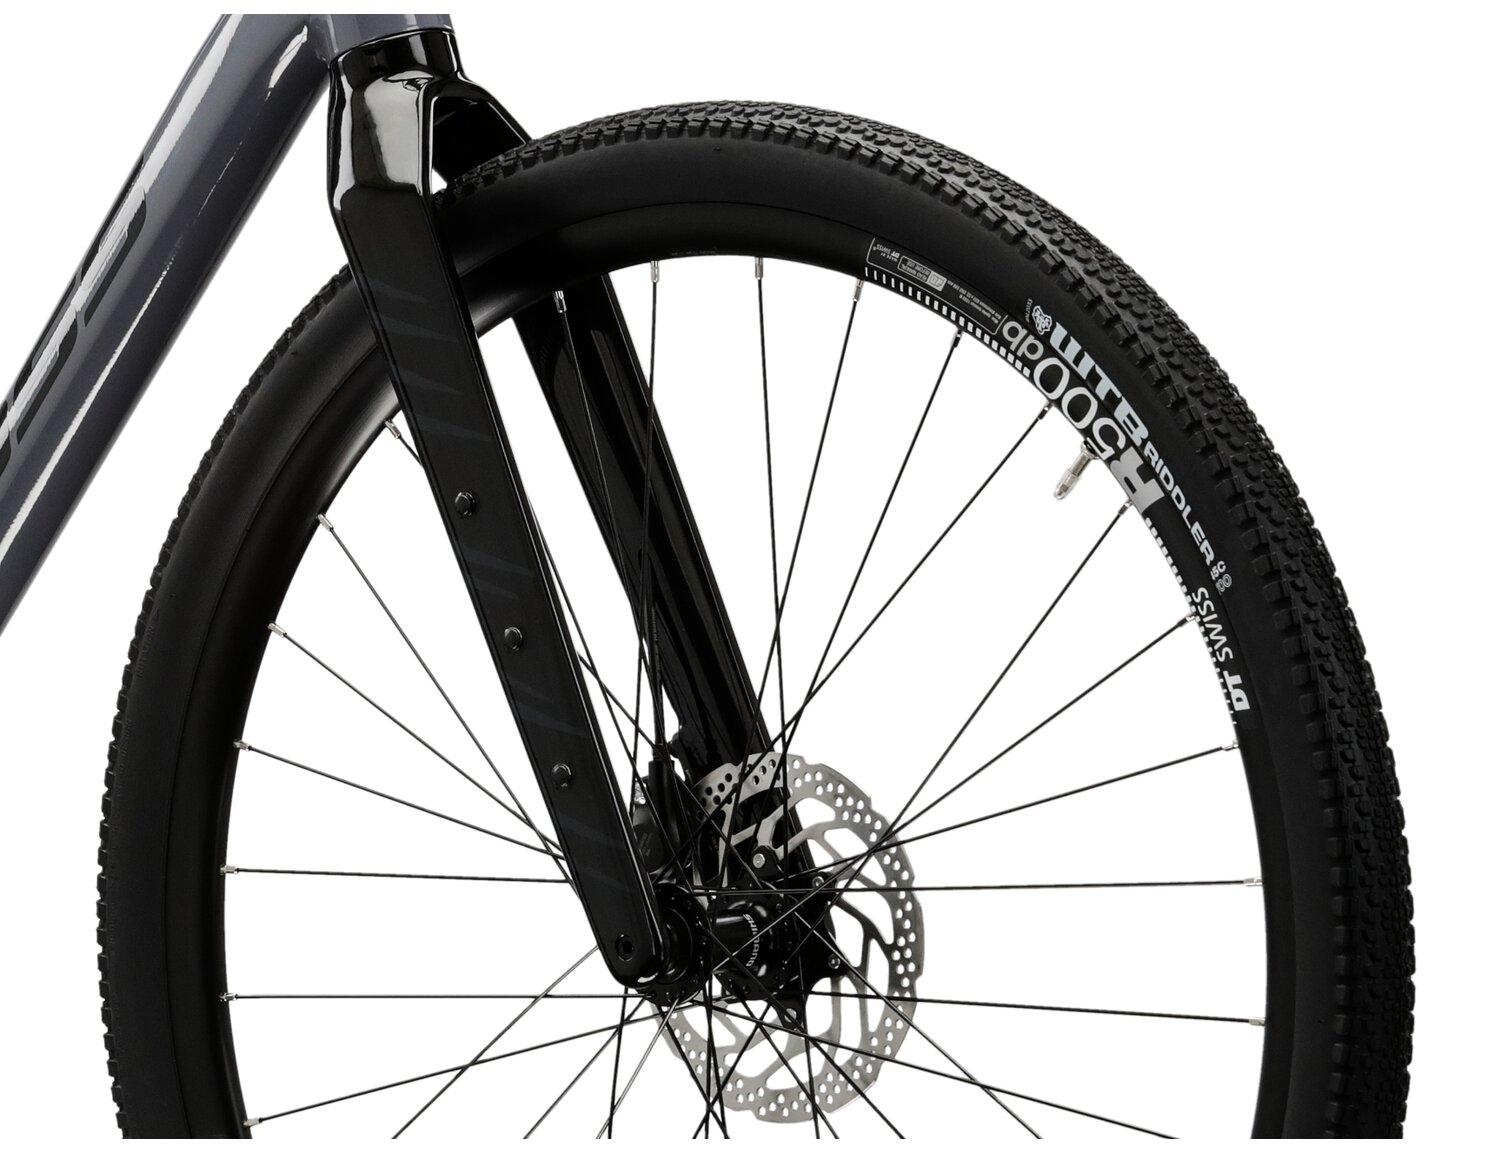   Sztywny carbonowy widelec oraz opony WTB Riddler o szerokośći 45mm w rowerze gravelowym KROSS Esker 5.0 